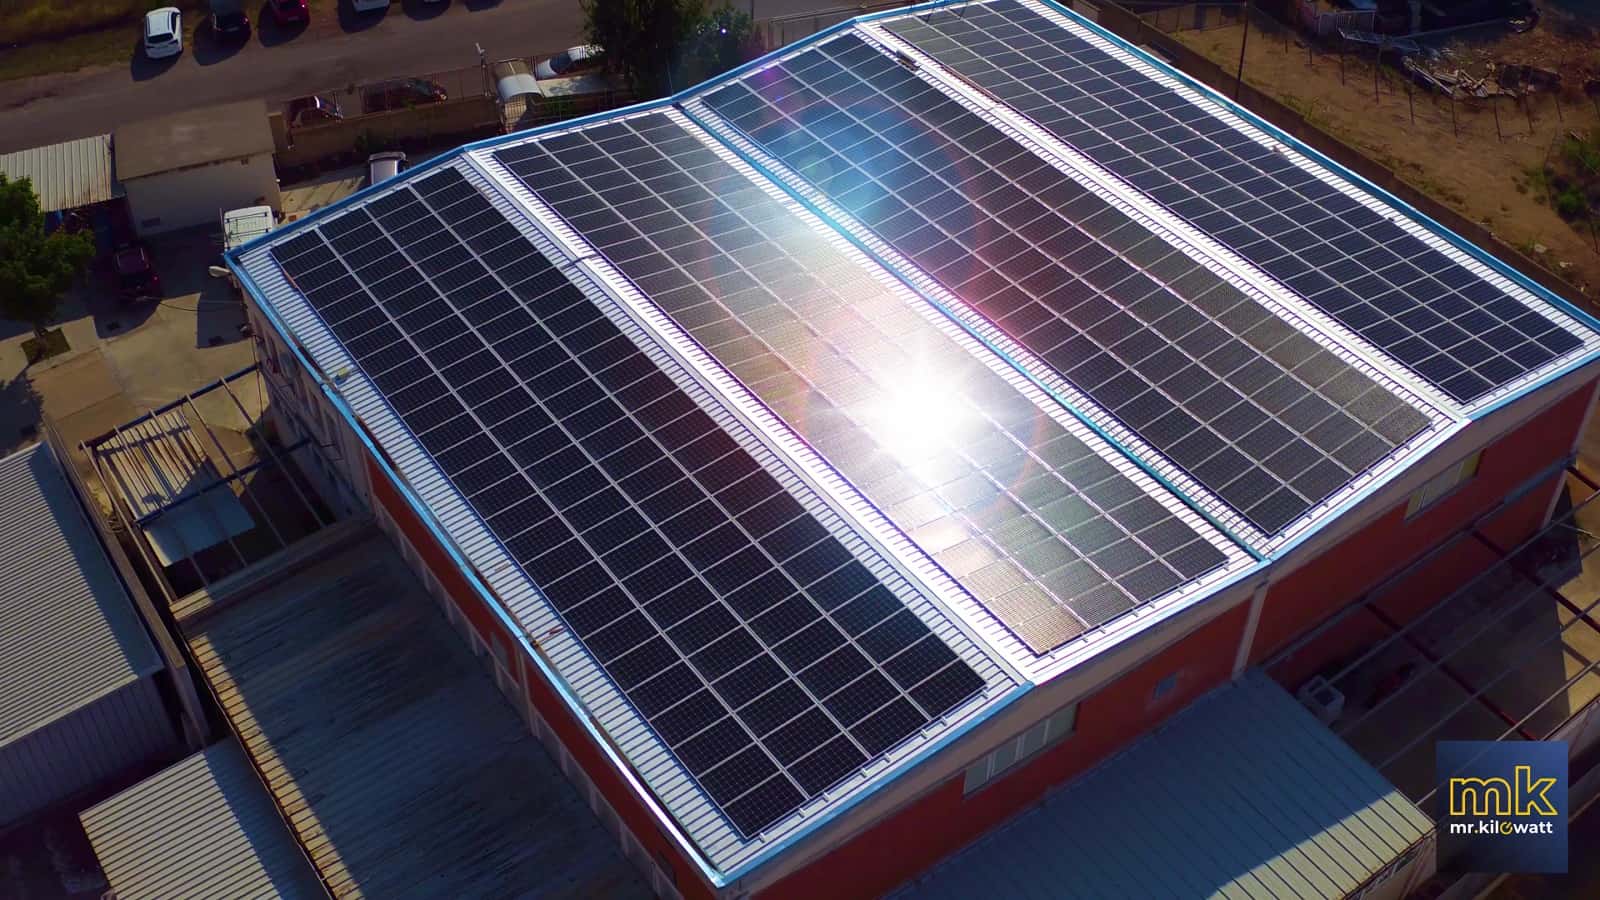 il più potente impianto fotovoltaico installato in Sardegna nel 2019?